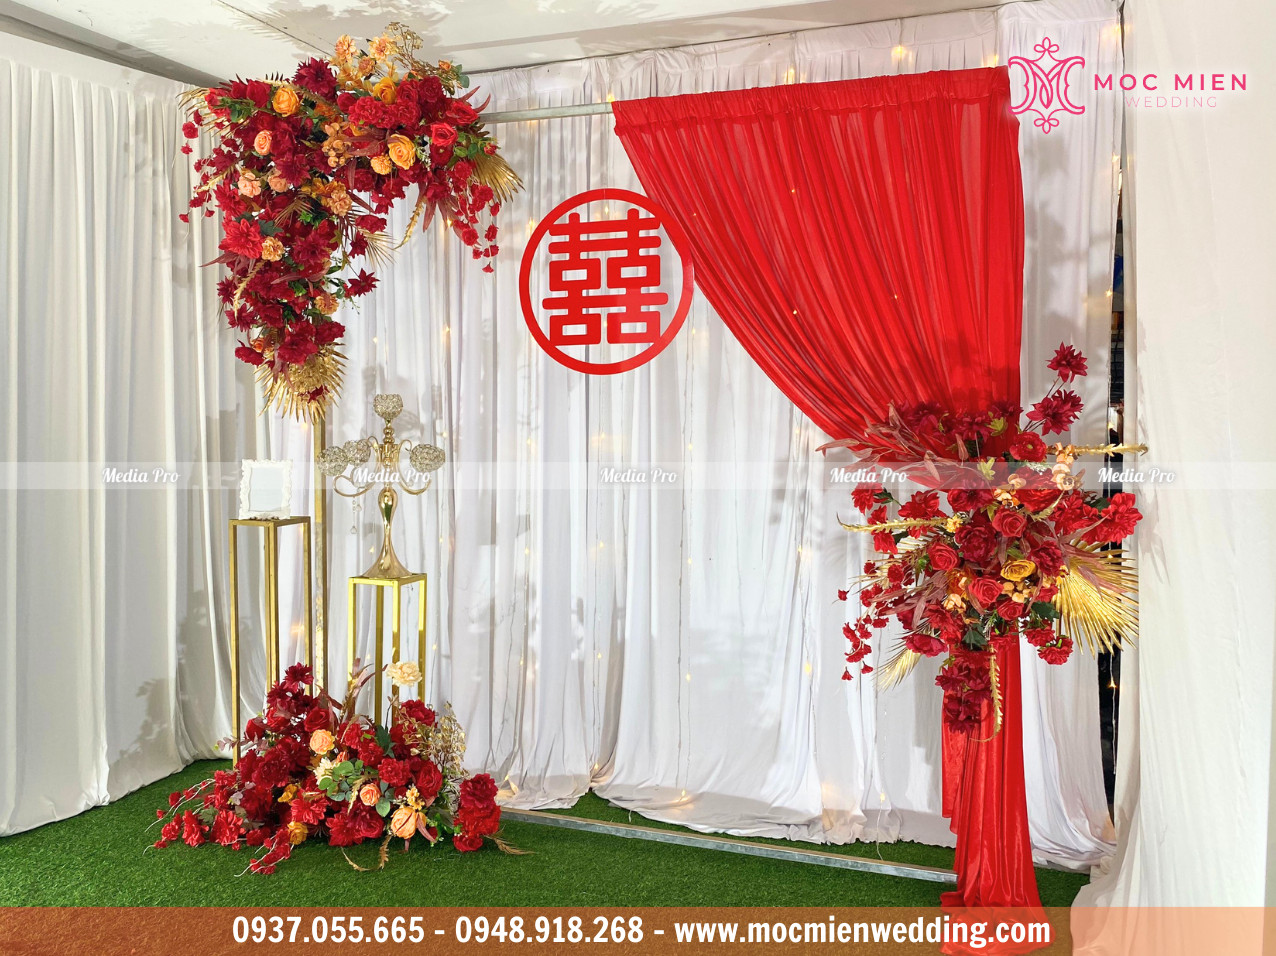 Cho thuê backdrop chụp hình cưới hoa lụa tone đỏ tại TPHCM